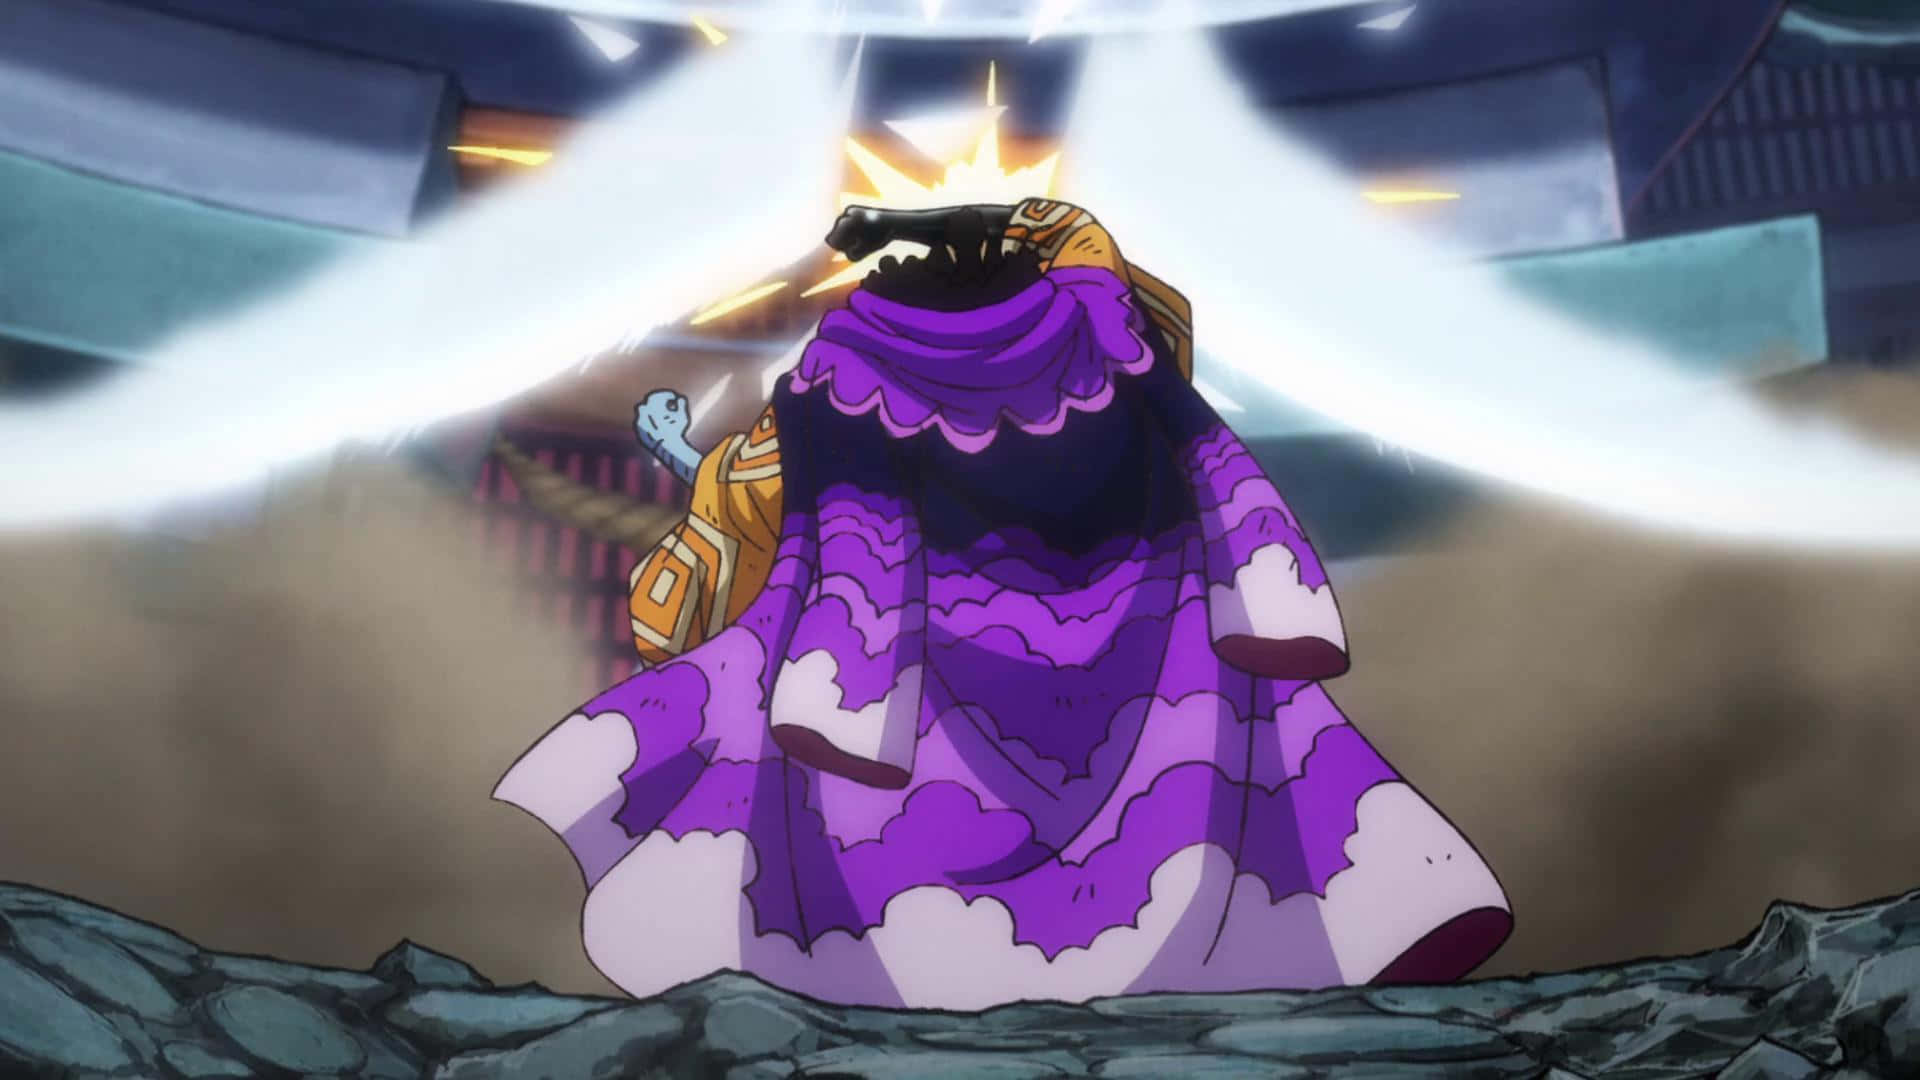 Unhombre Vestido De Púrpura De Pie En Una Cueva Fondo de pantalla